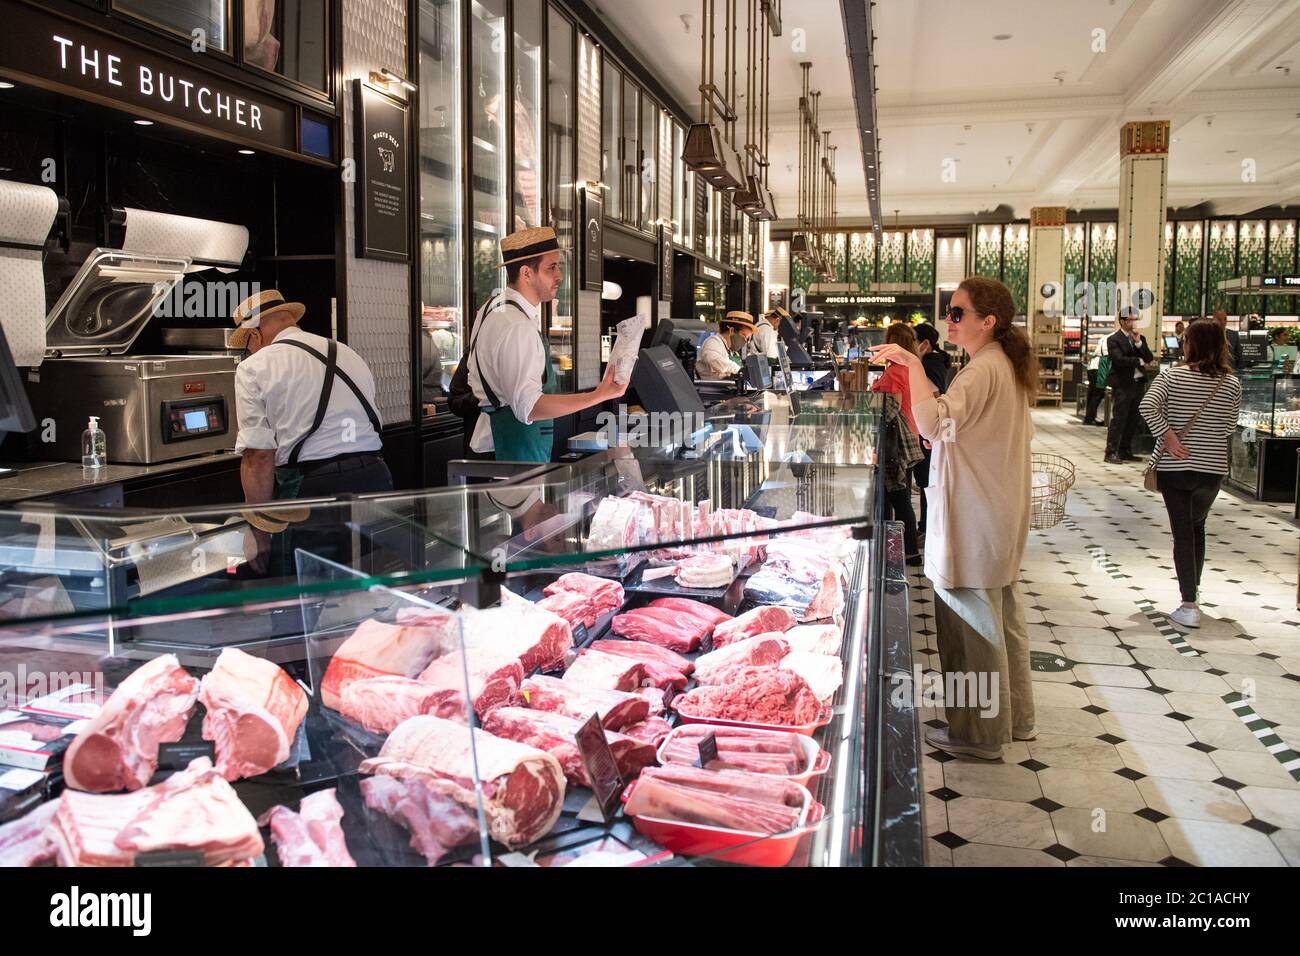 Kunden, die im Harrods Store in Knightsbridge, London, einkaufen, nachdem die Regierung angekündigt hat, dass nicht-wesentliche Geschäfte wieder geöffnet werden können. Stockfoto